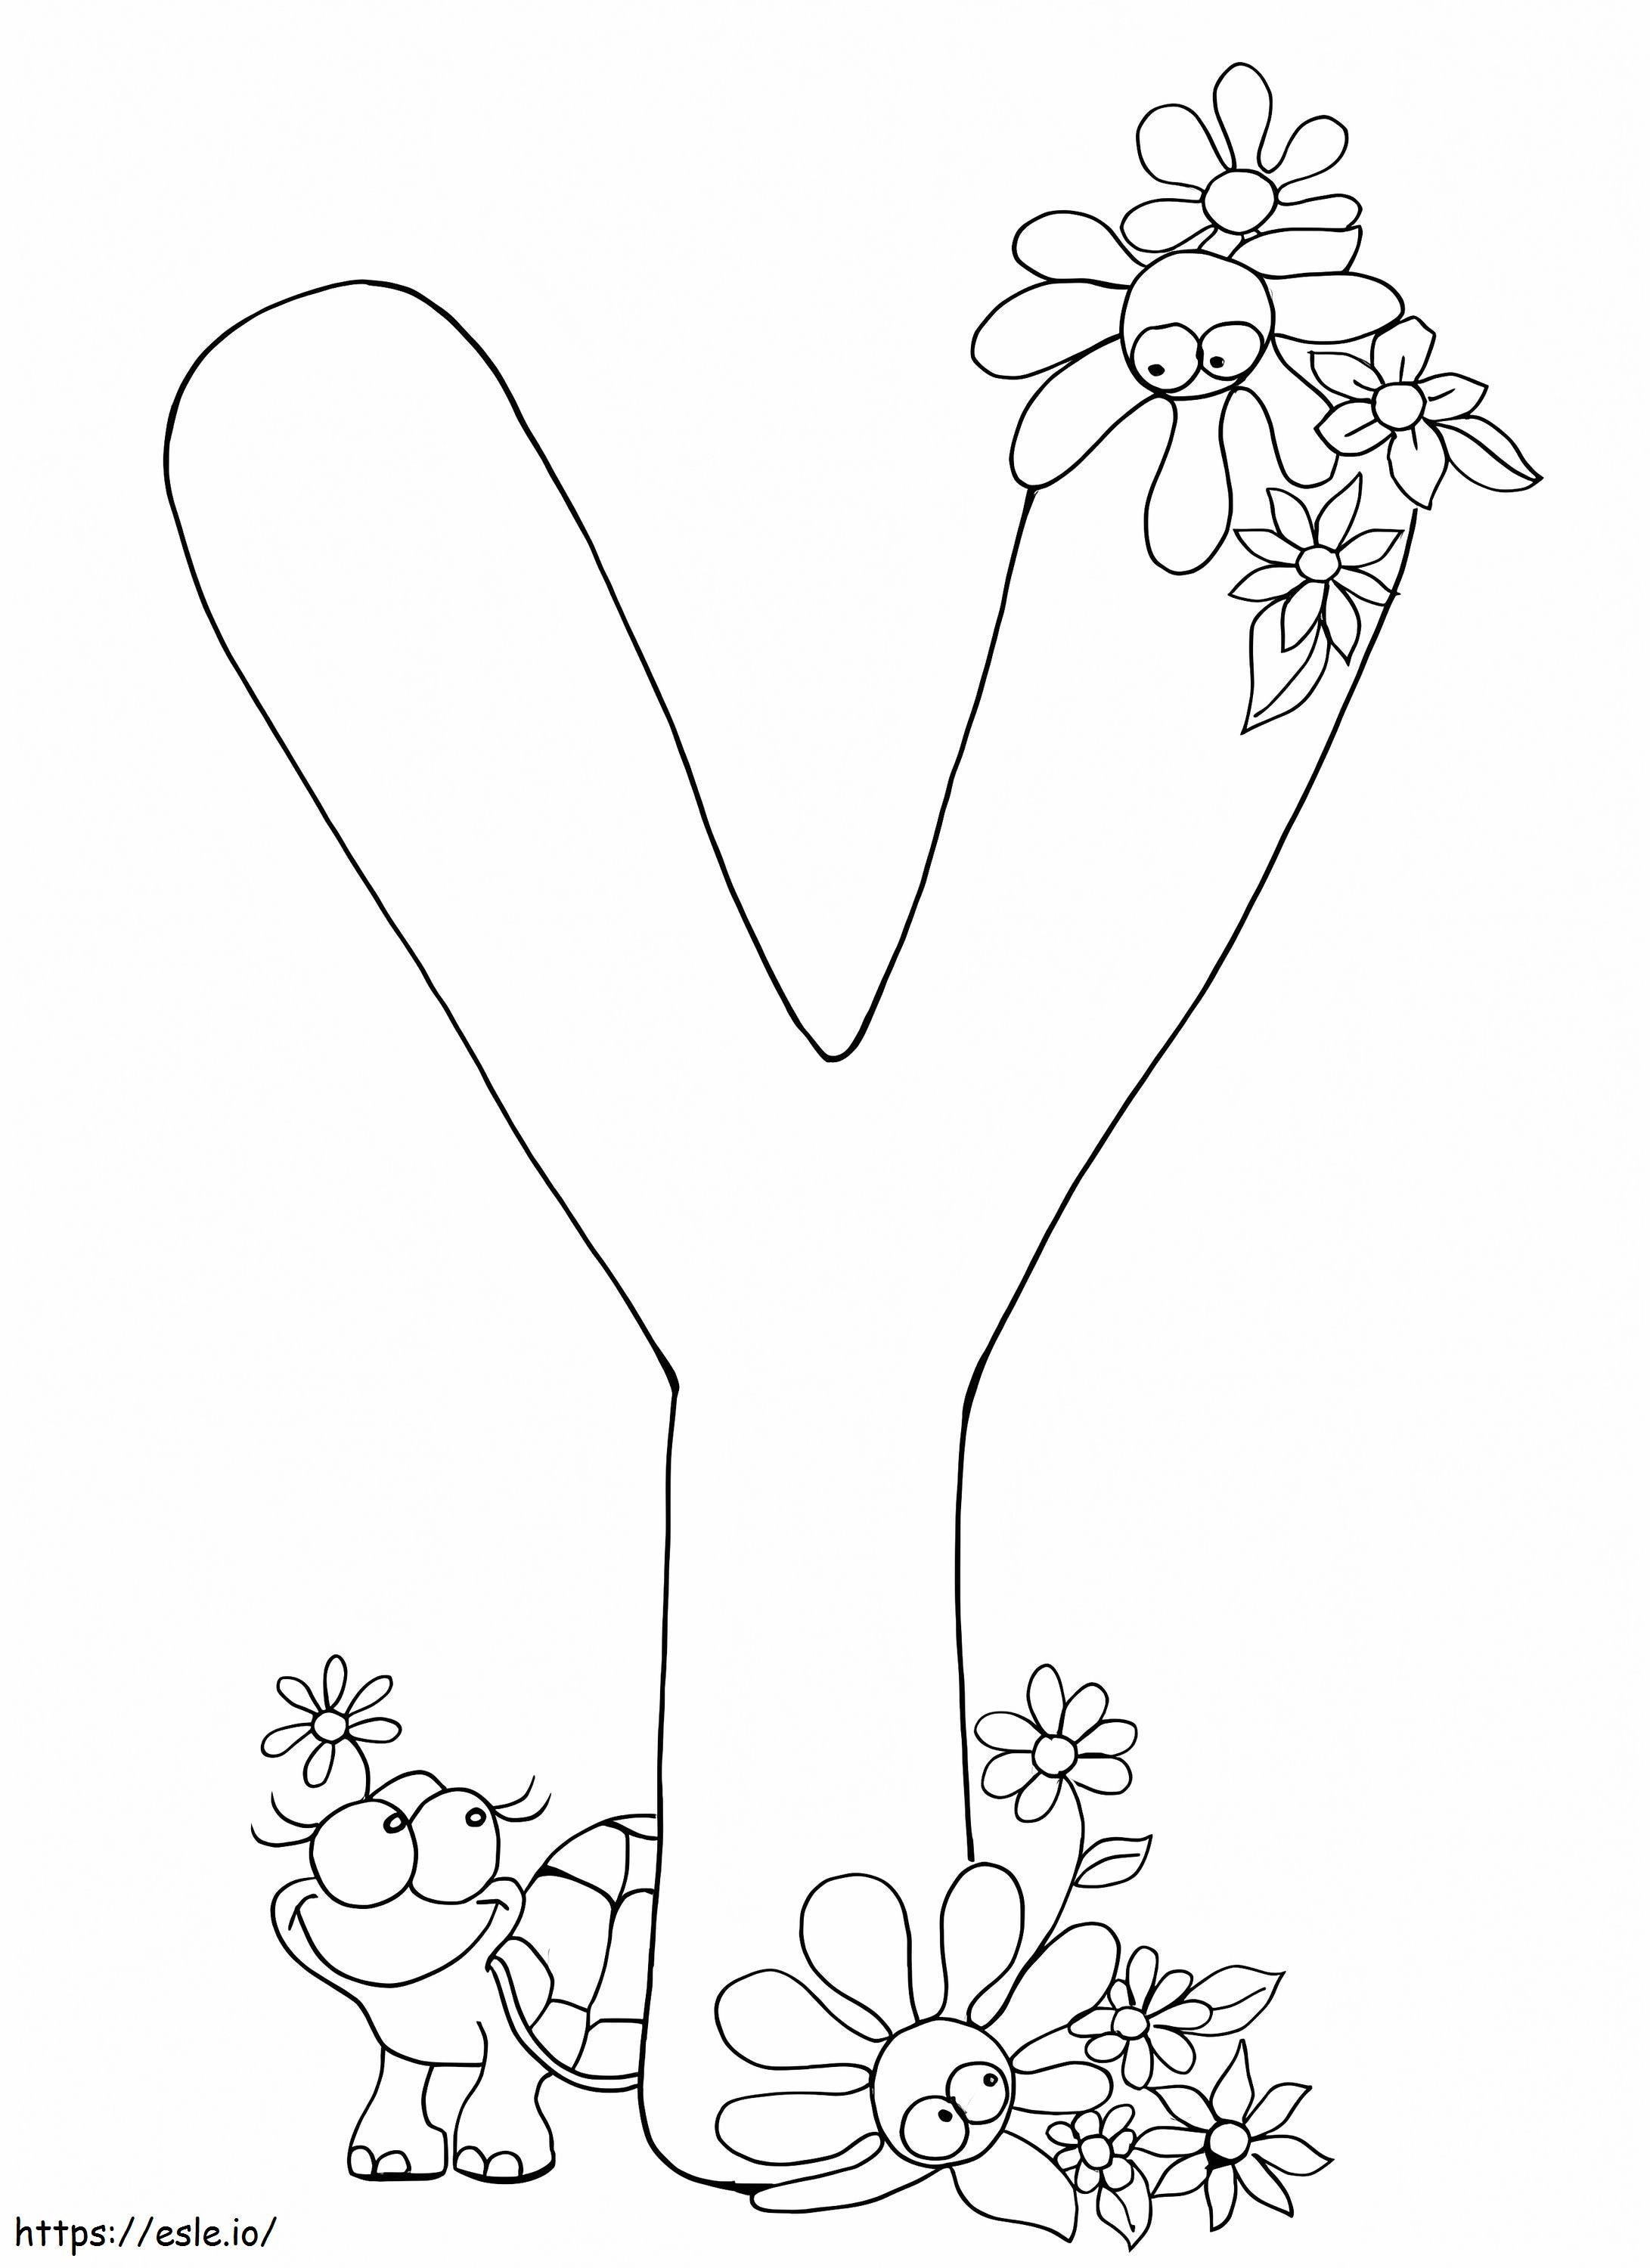 Letra Y com tartaruga e flor para colorir